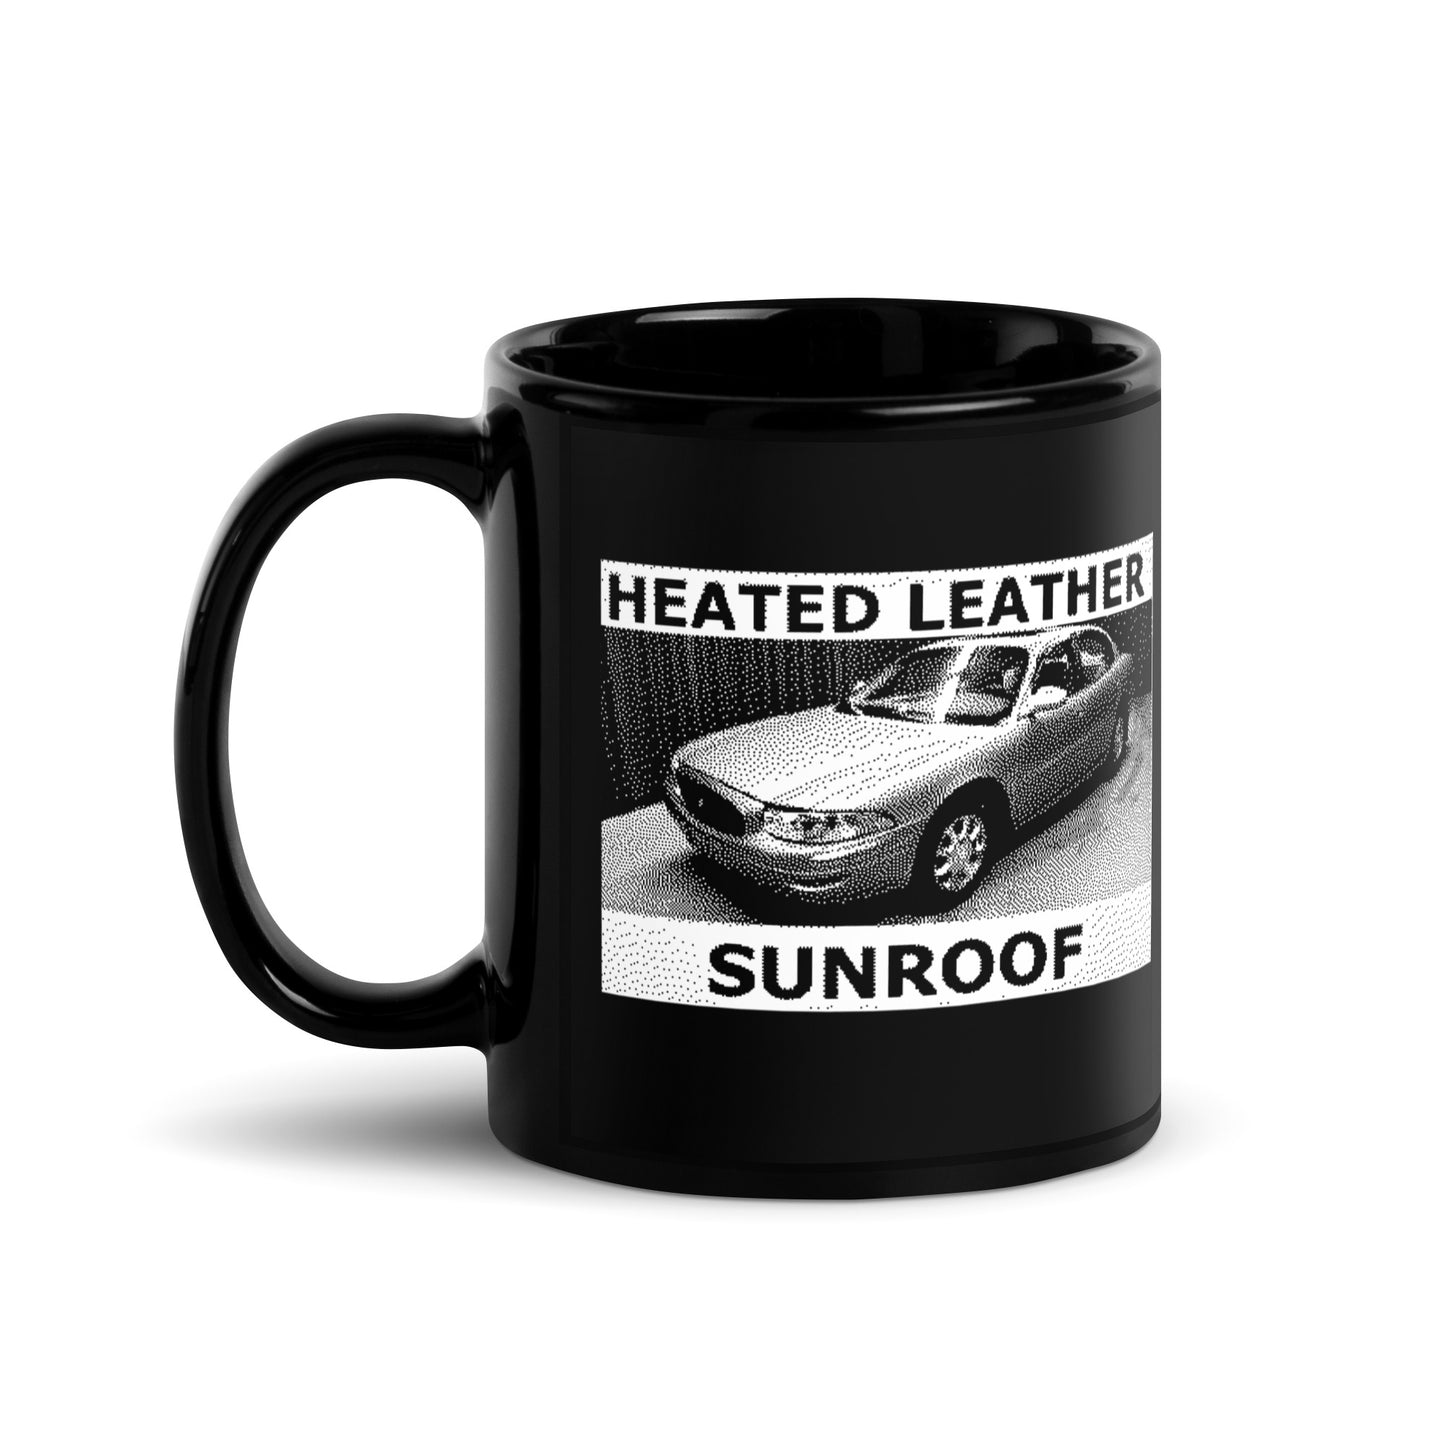 Heated Leather Sunroof Mug